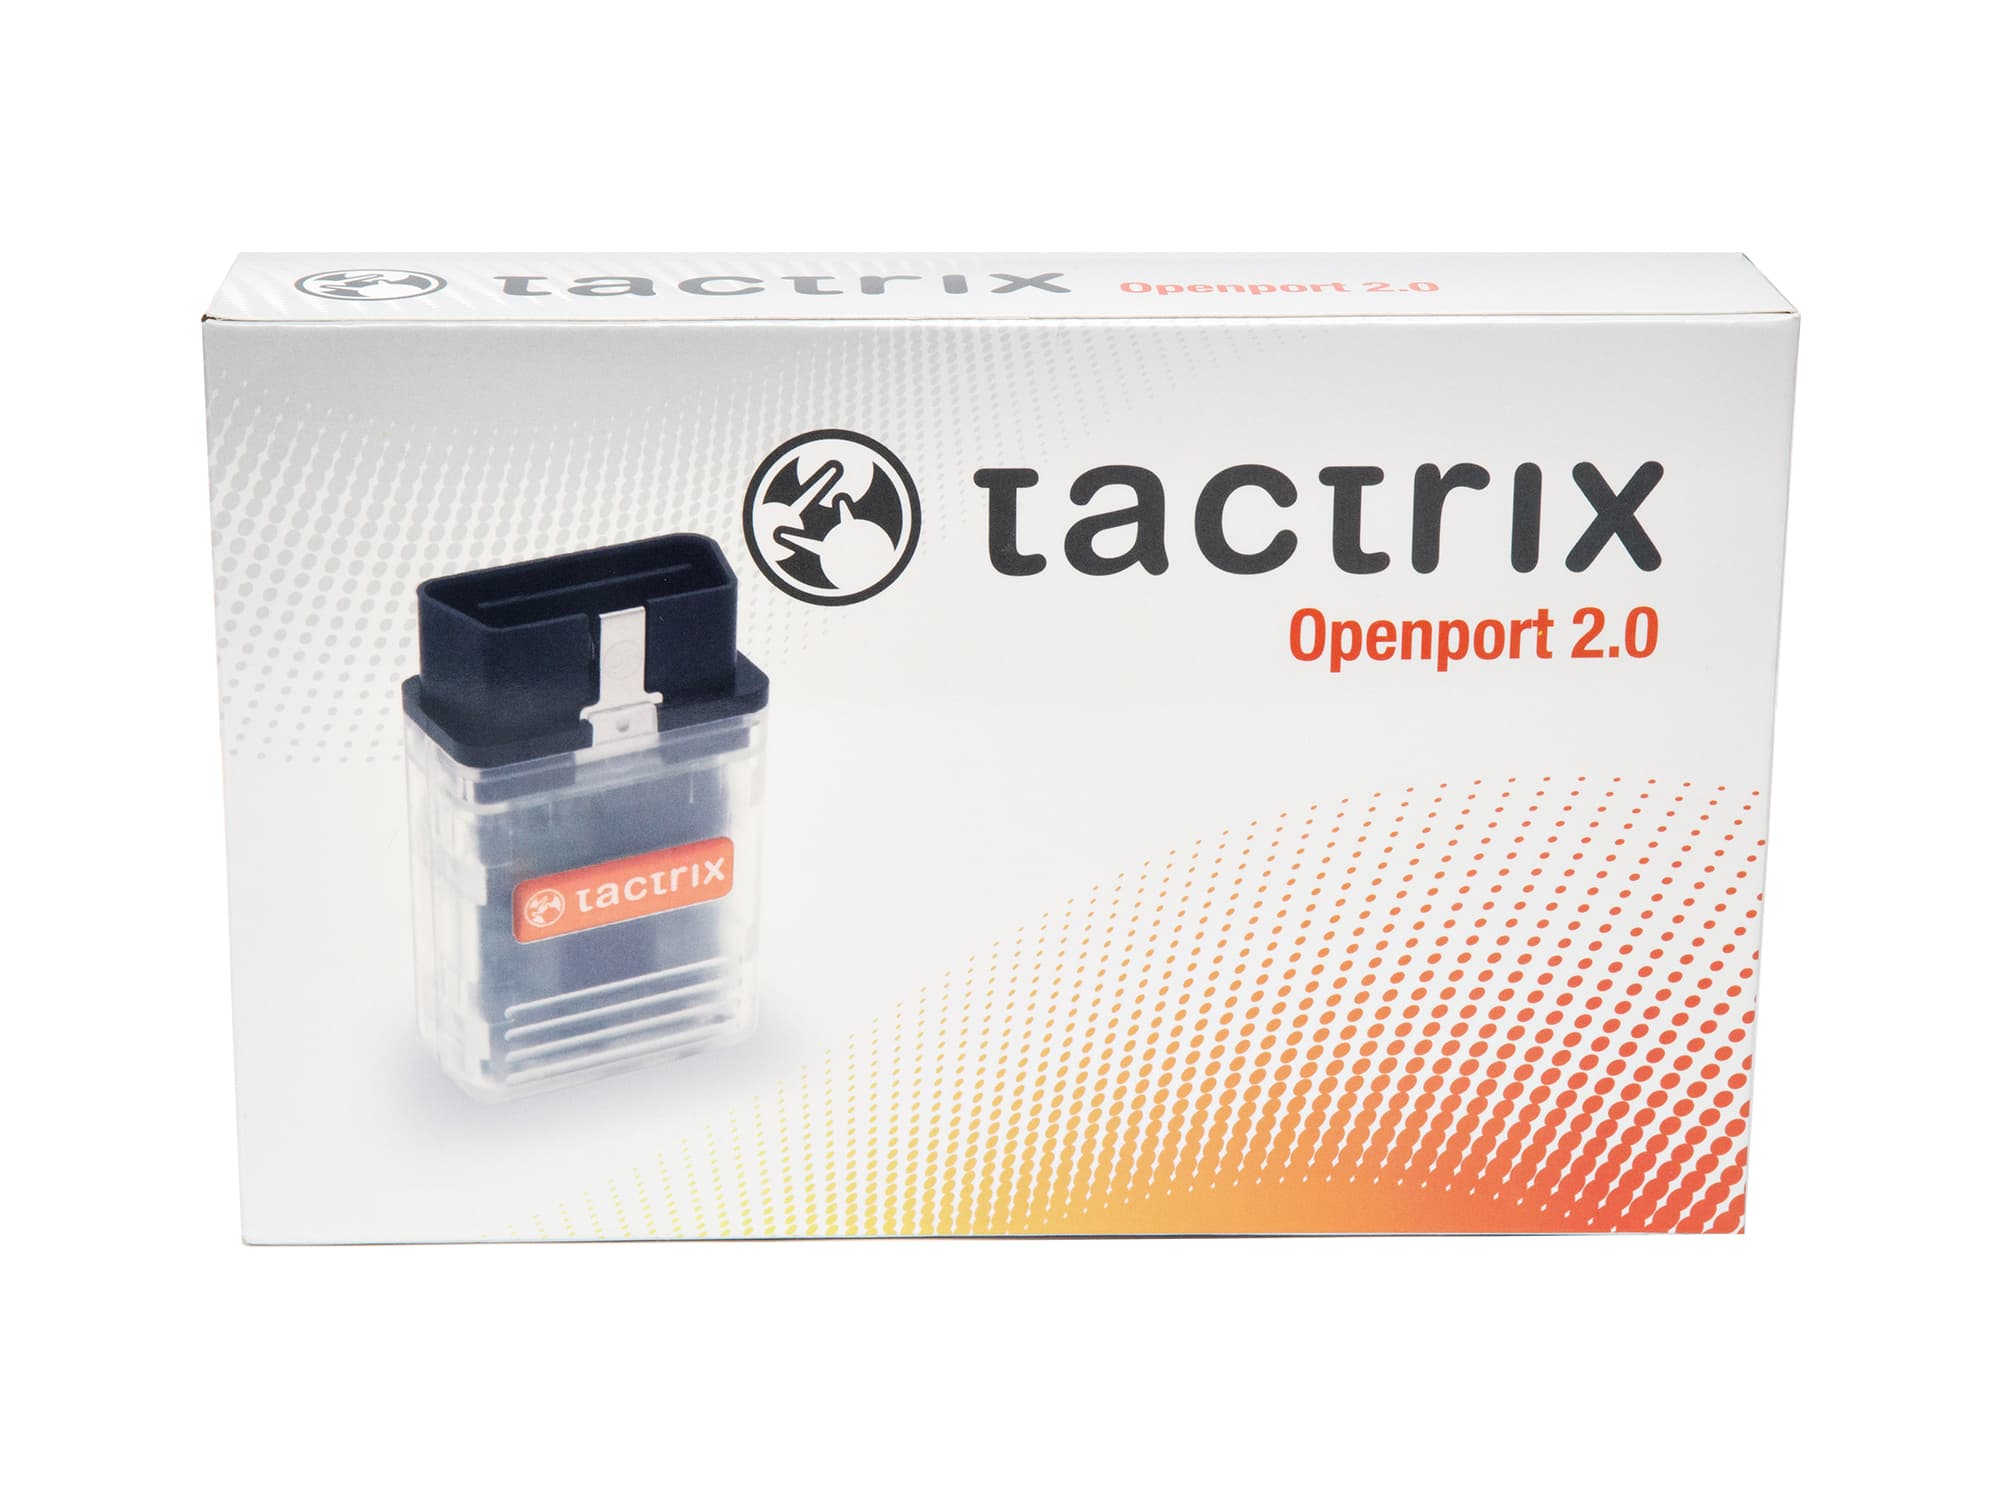 tactrix openport 2.0 ovtuned